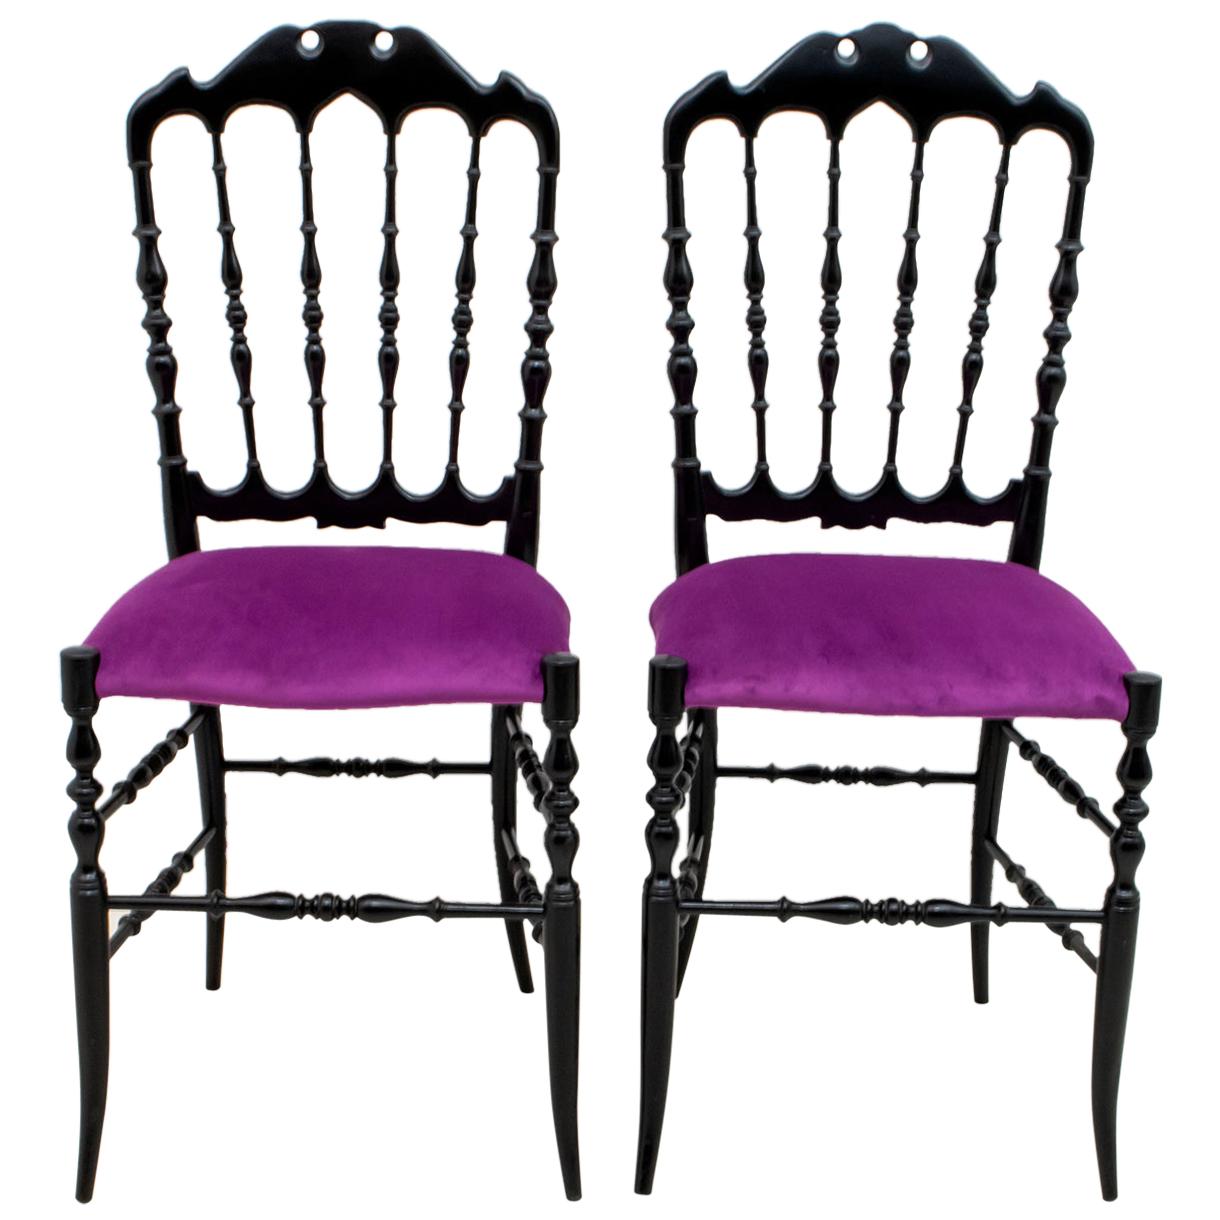 Dieses Paar typischer Chiavari-Stühle wurde von Gaetano Descalzi in der italienischen Stadt Chiavari entworfen, wo es seitdem in verschiedenen Modellen hergestellt wird.
Aus schwarz lackierter Buche und mit fuchsiafarbenem Samt gepolstert.
Die